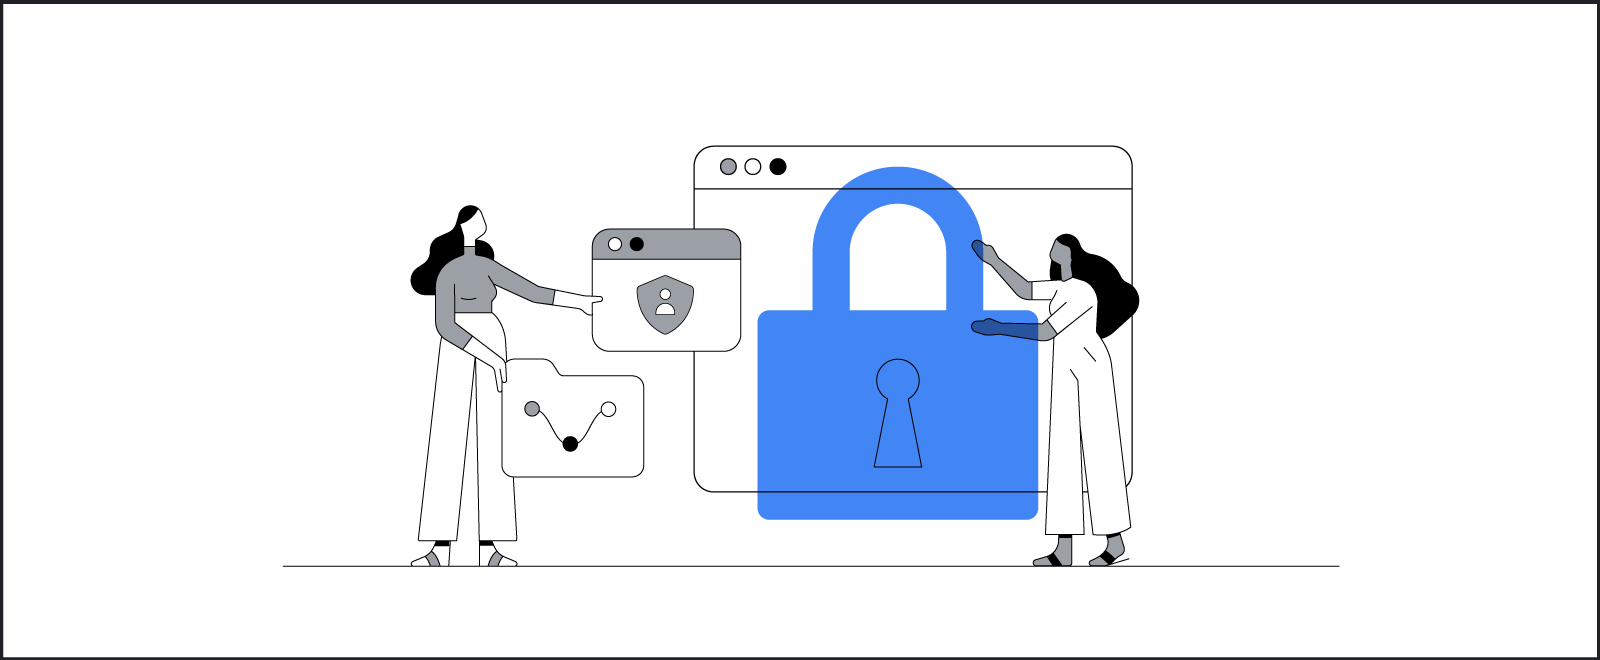 Dos mujeres interactúan con herramientas de privacidad online